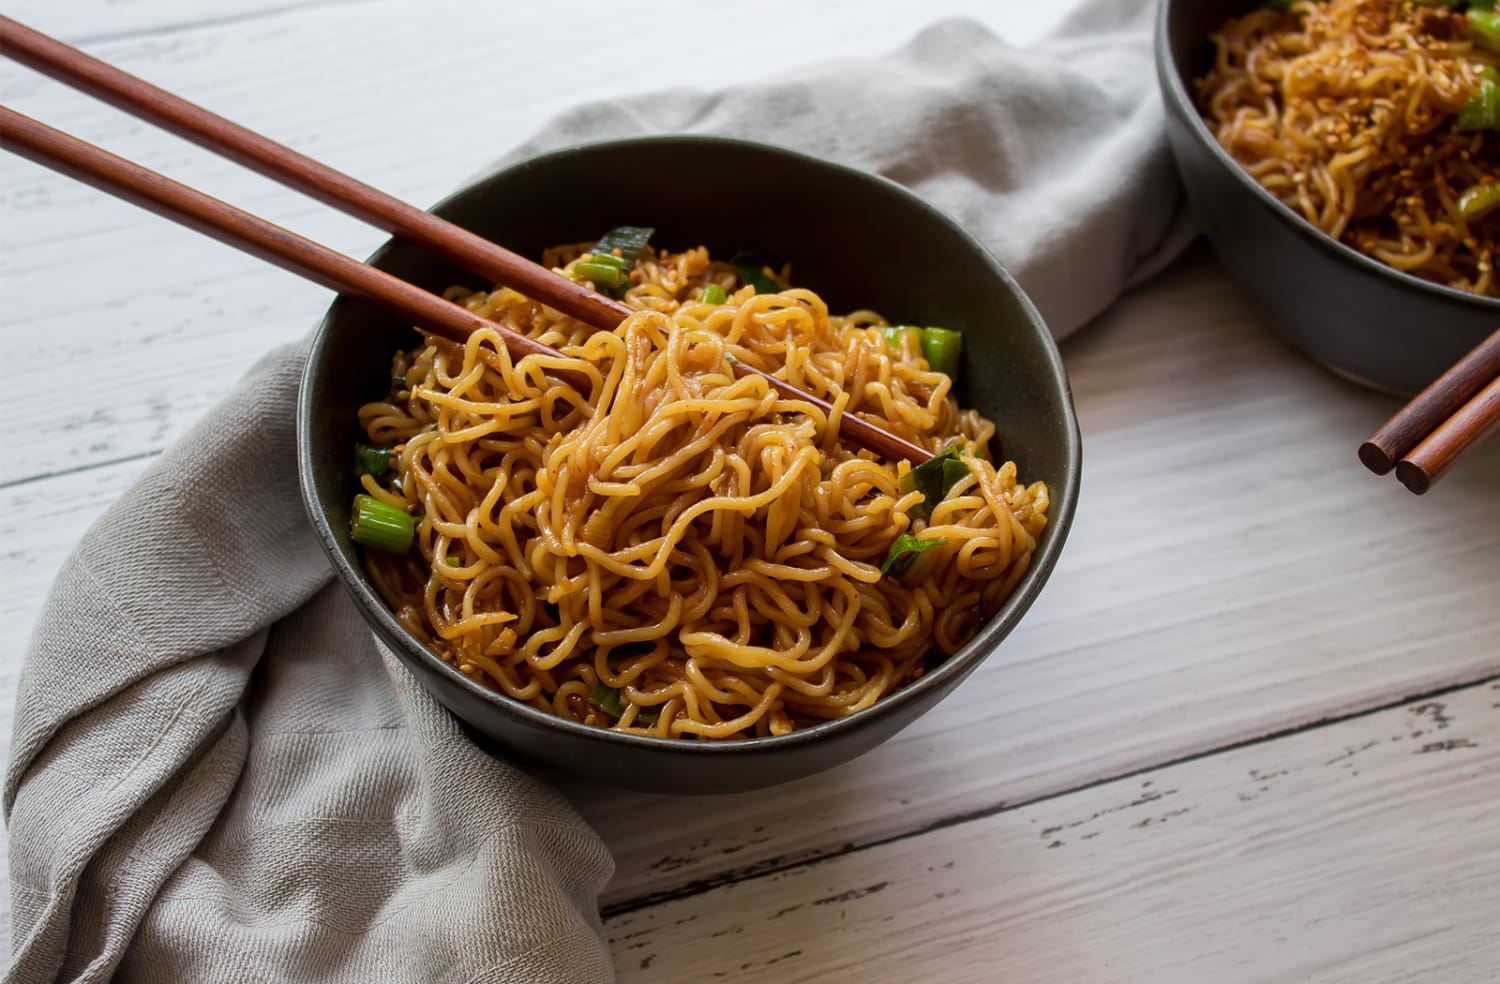 Vegan garlic sesame noodles - Eating Vegan With Me